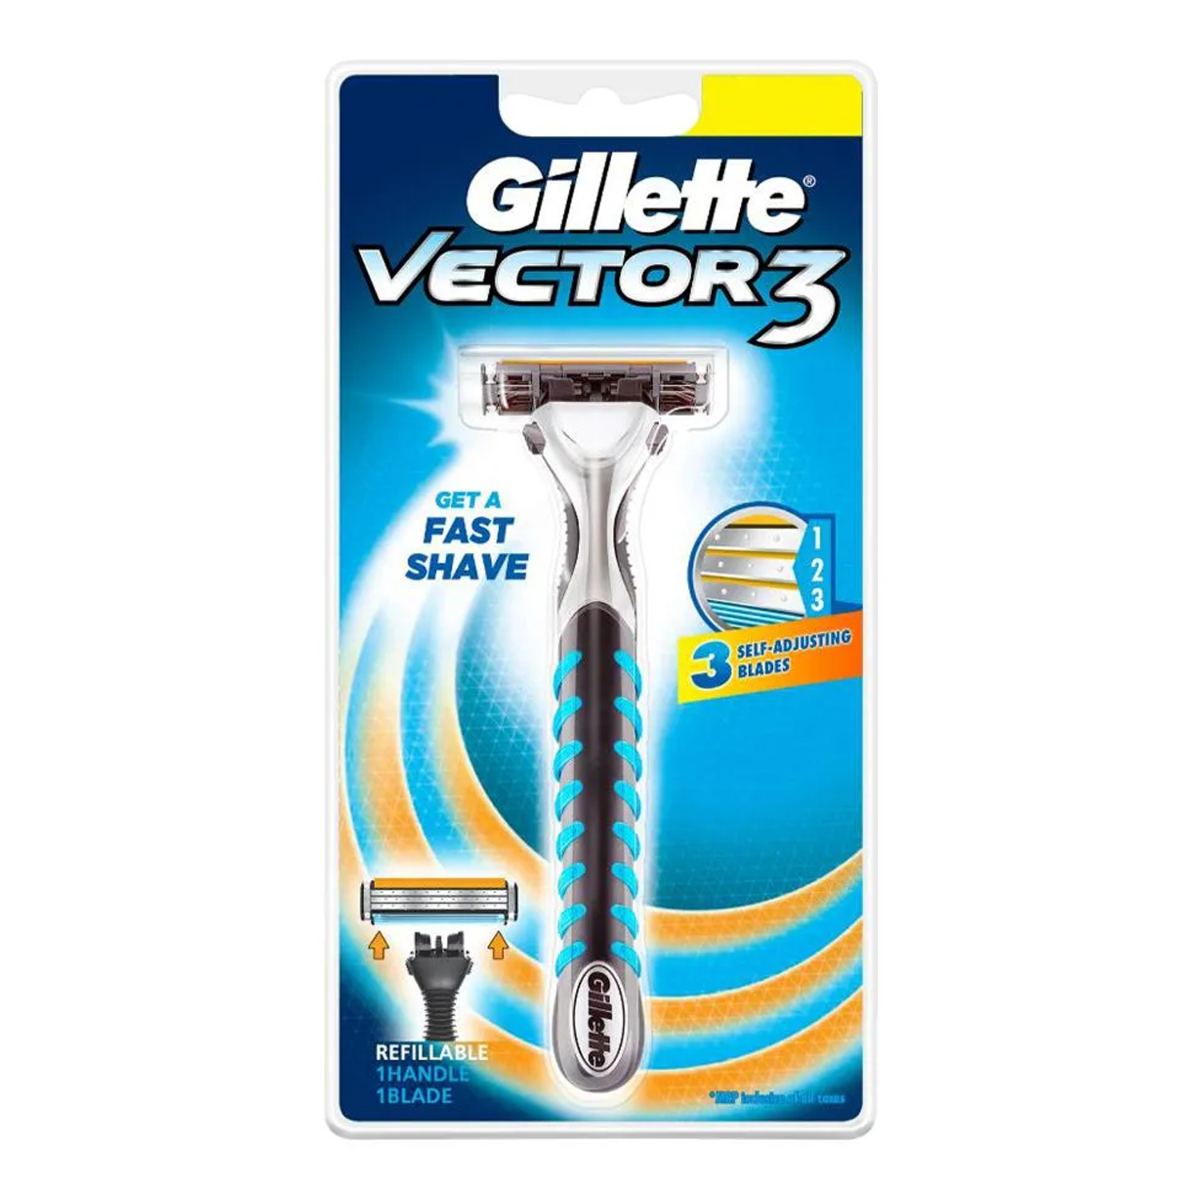 Gillette Vector 3 Manual Shaving Razor, 20gm